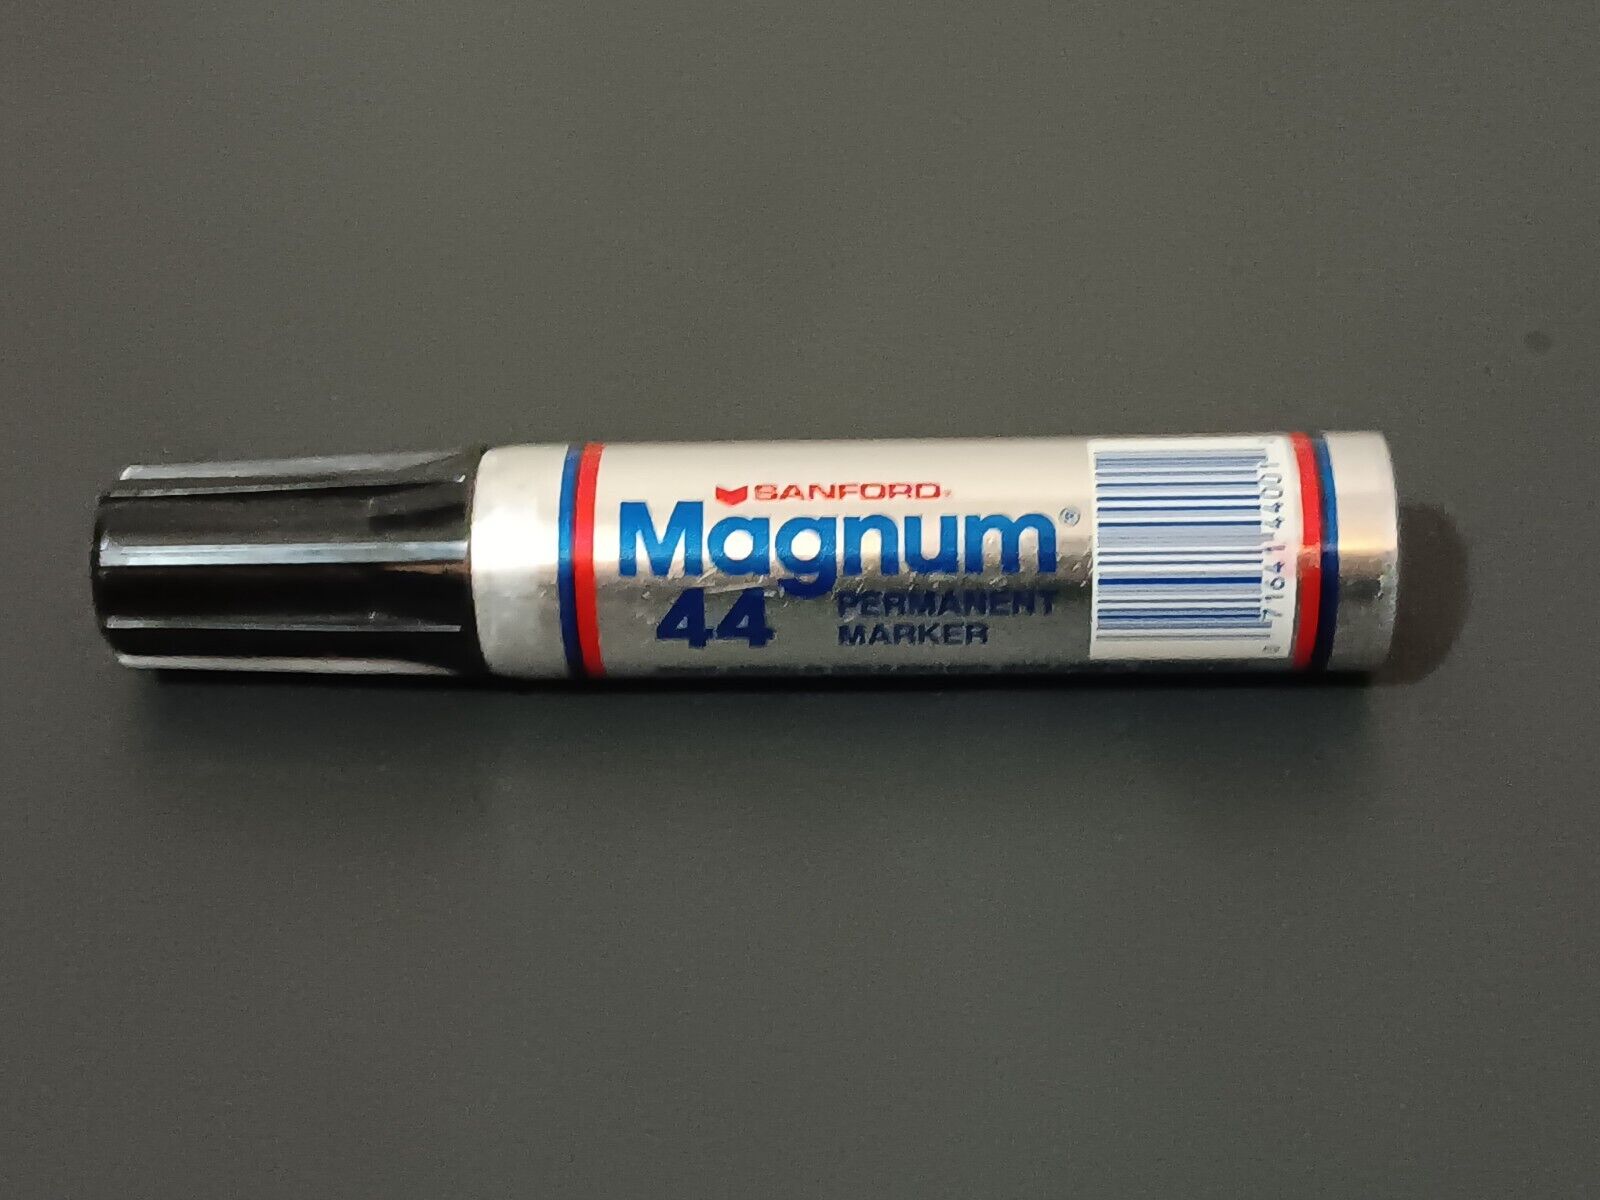 Vintage SANFORD Magnum 44 Permanent Marker, Black Ink, Tested. Works. 